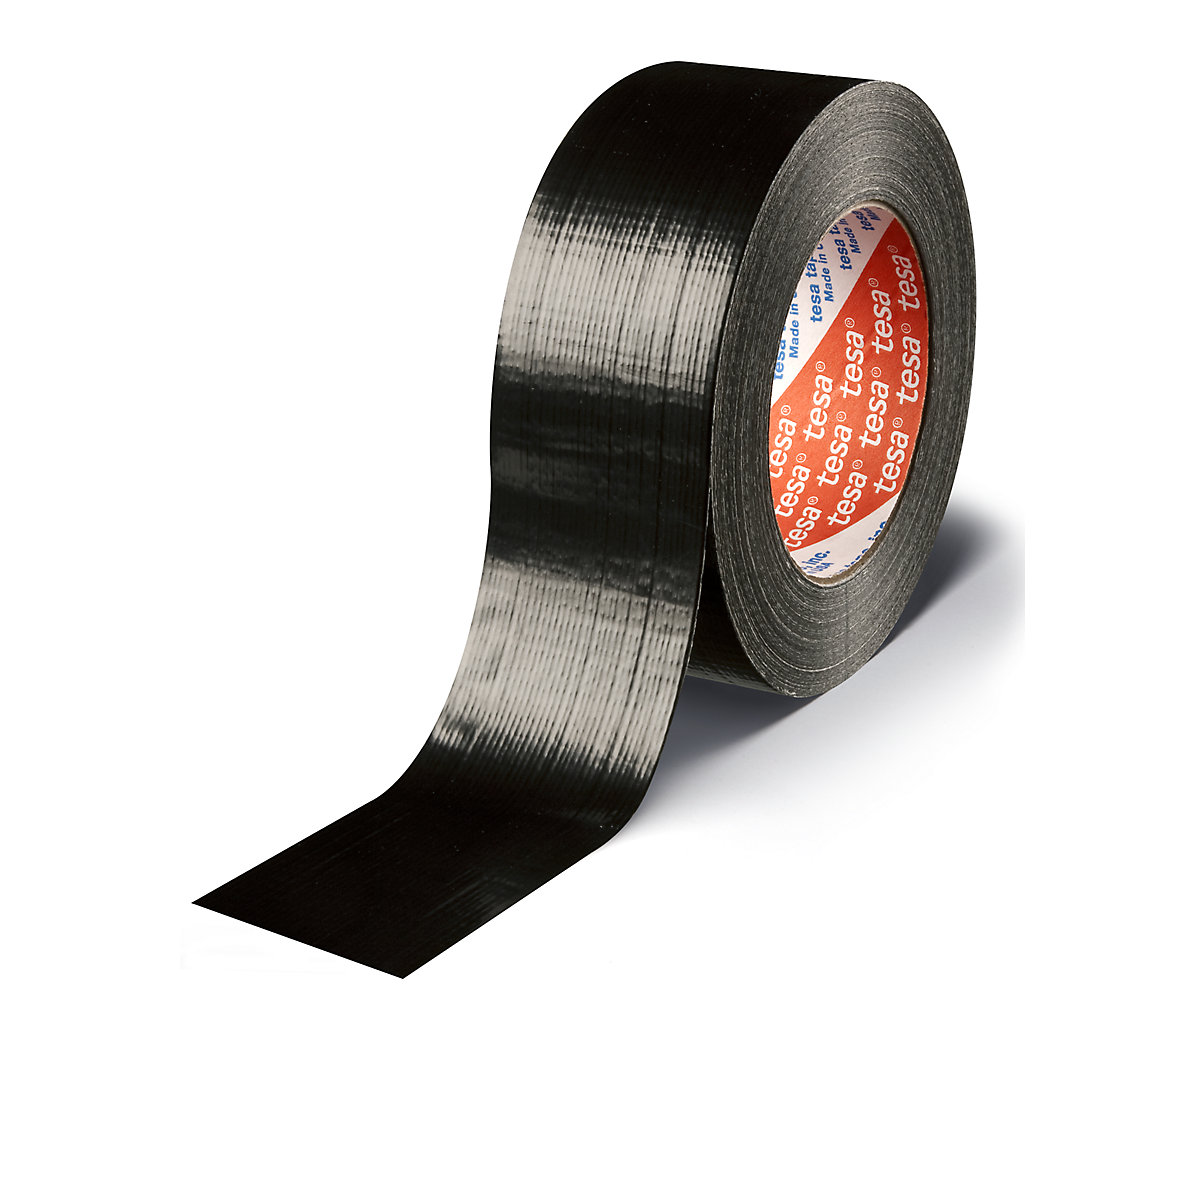 Traka od tkanine – tesa, platnena traka tesa® 4613 Standard, pak. 48 rola, u crnoj boji, širina trake 48 mm-5